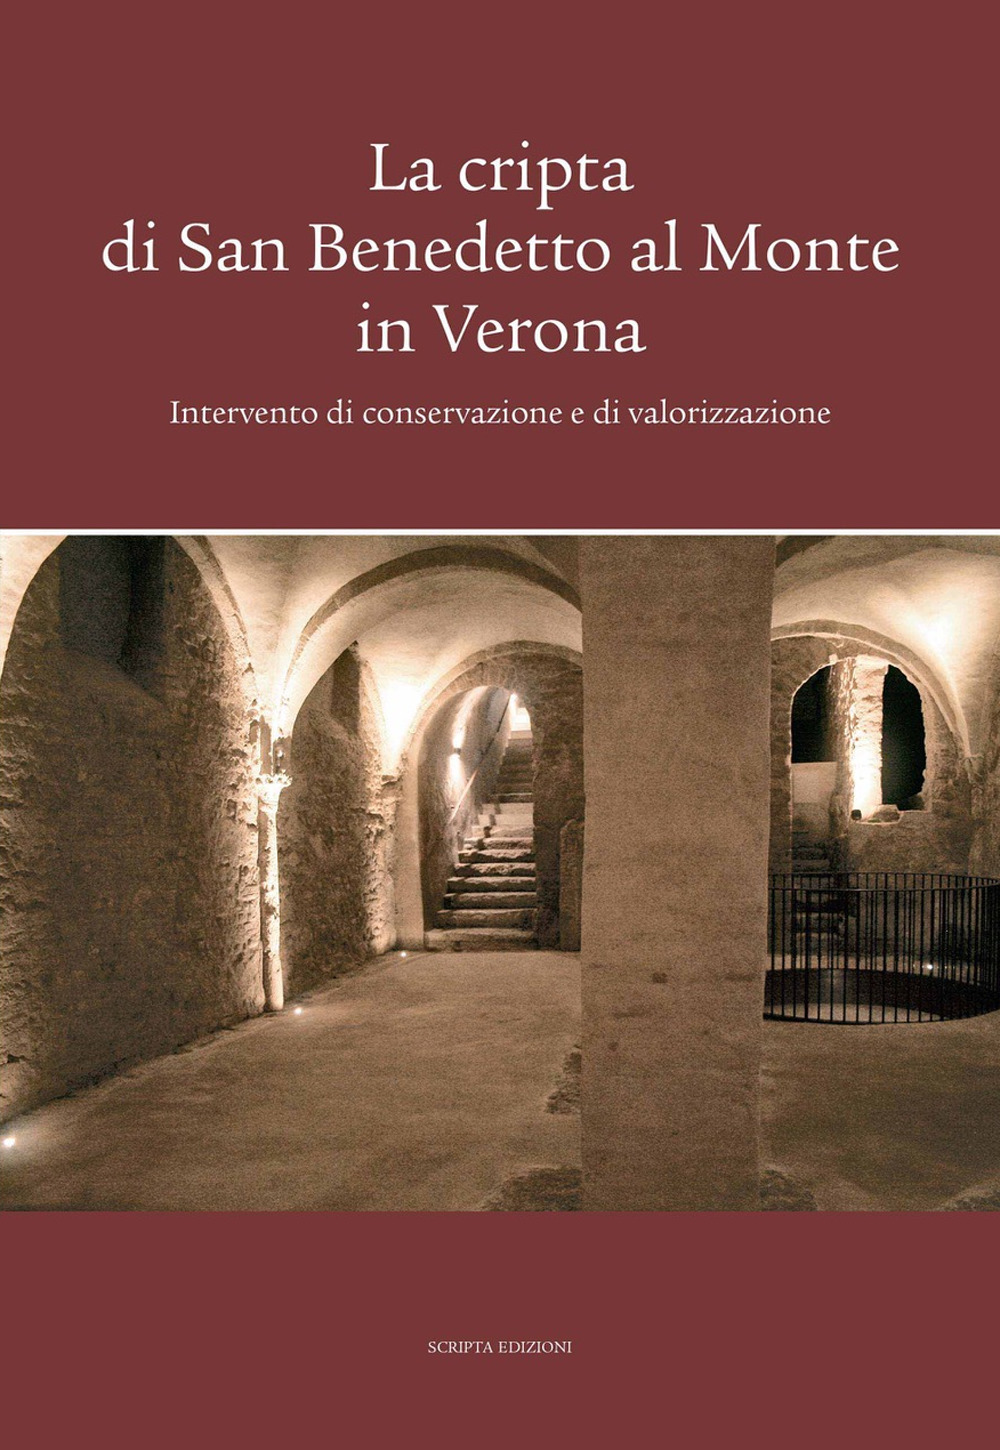 La cripta di San Benedetto al Monte in Verona. Intervento di conservazione e di valorizzazione